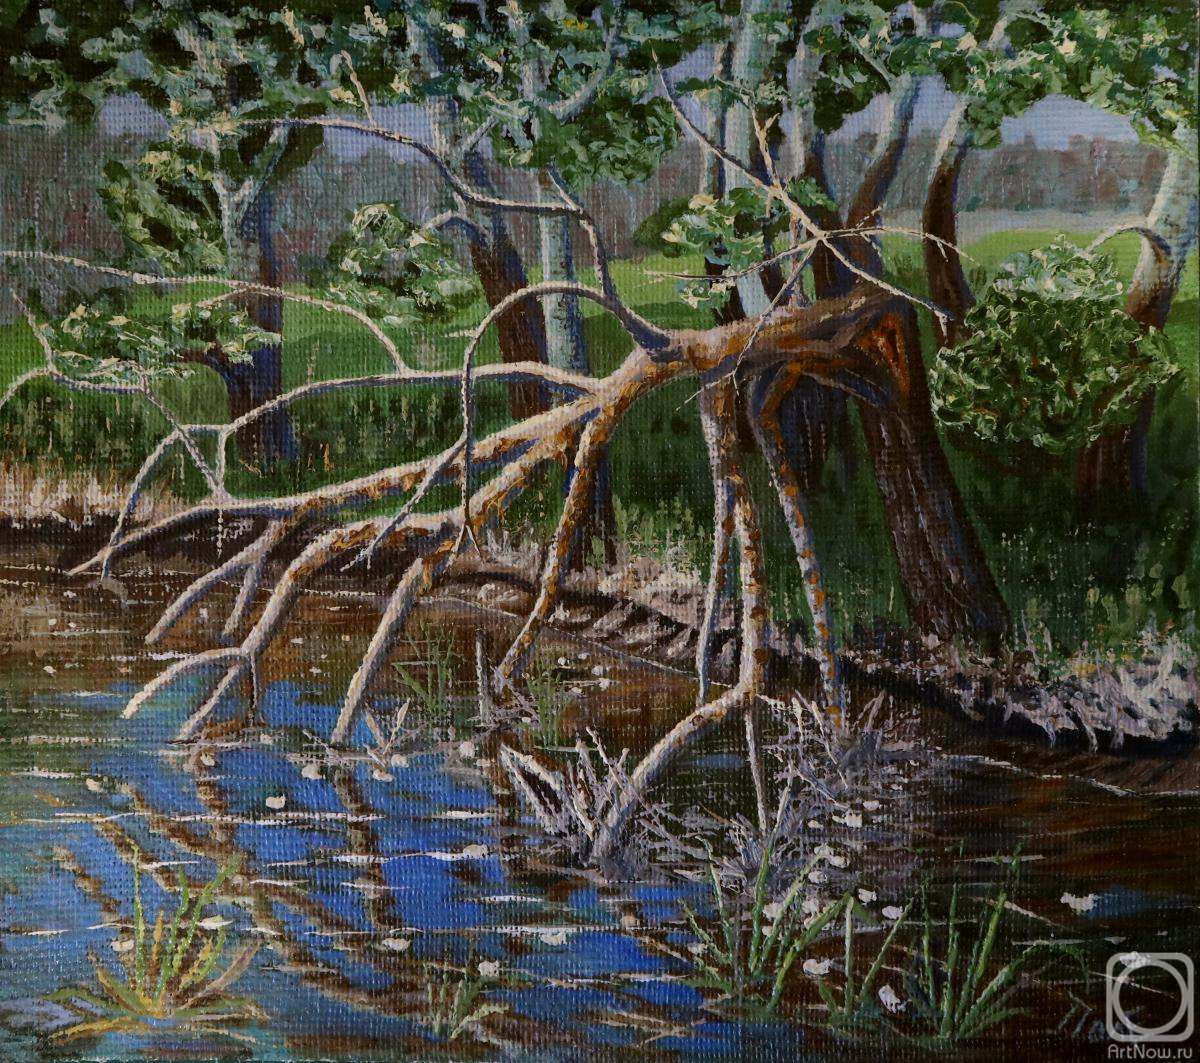 Polischuk Olga. Summer landscape on the river bank